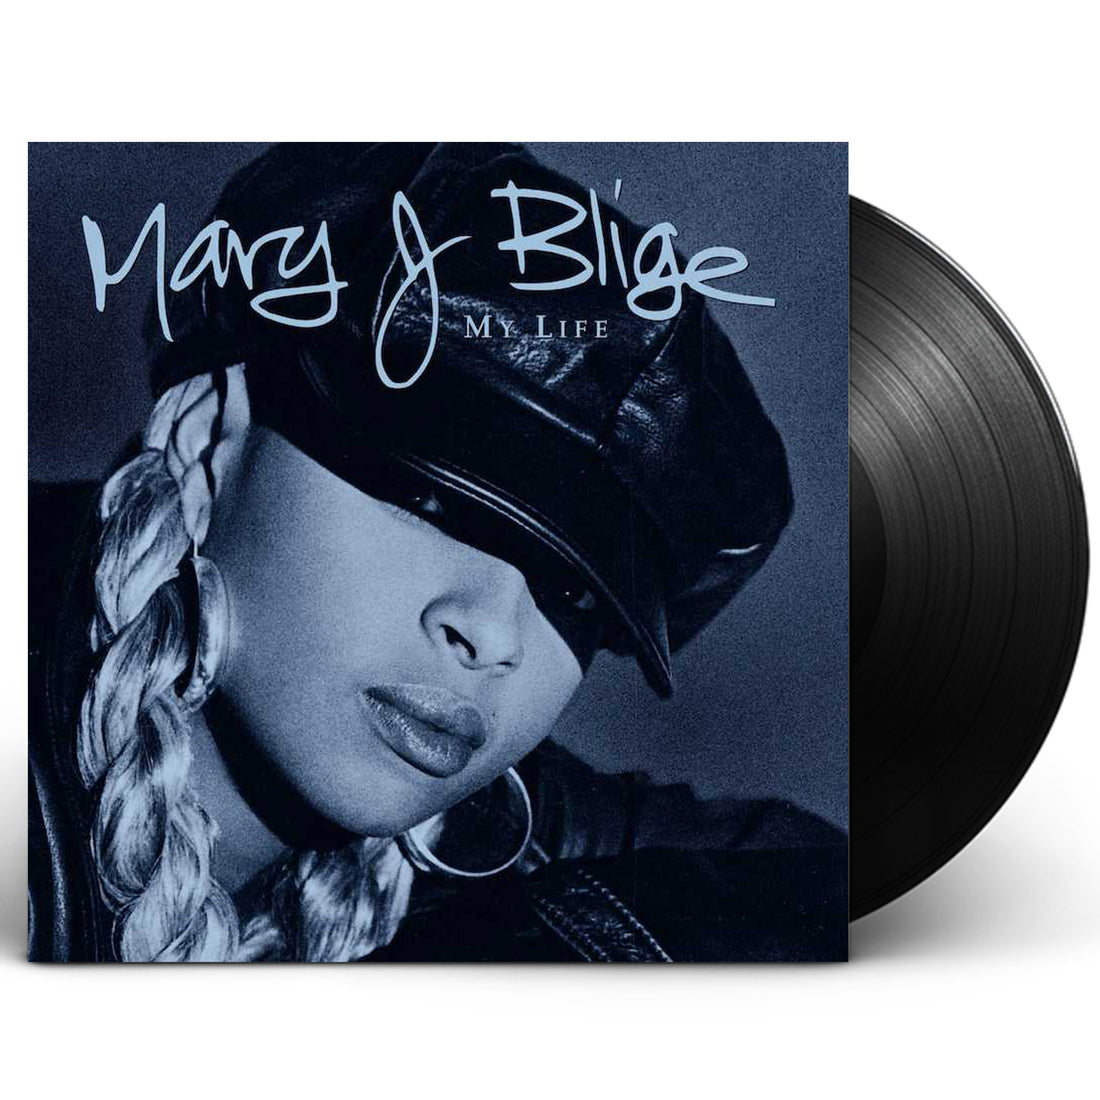 Mary J. Blige "My Life" 2xLP Vinyl